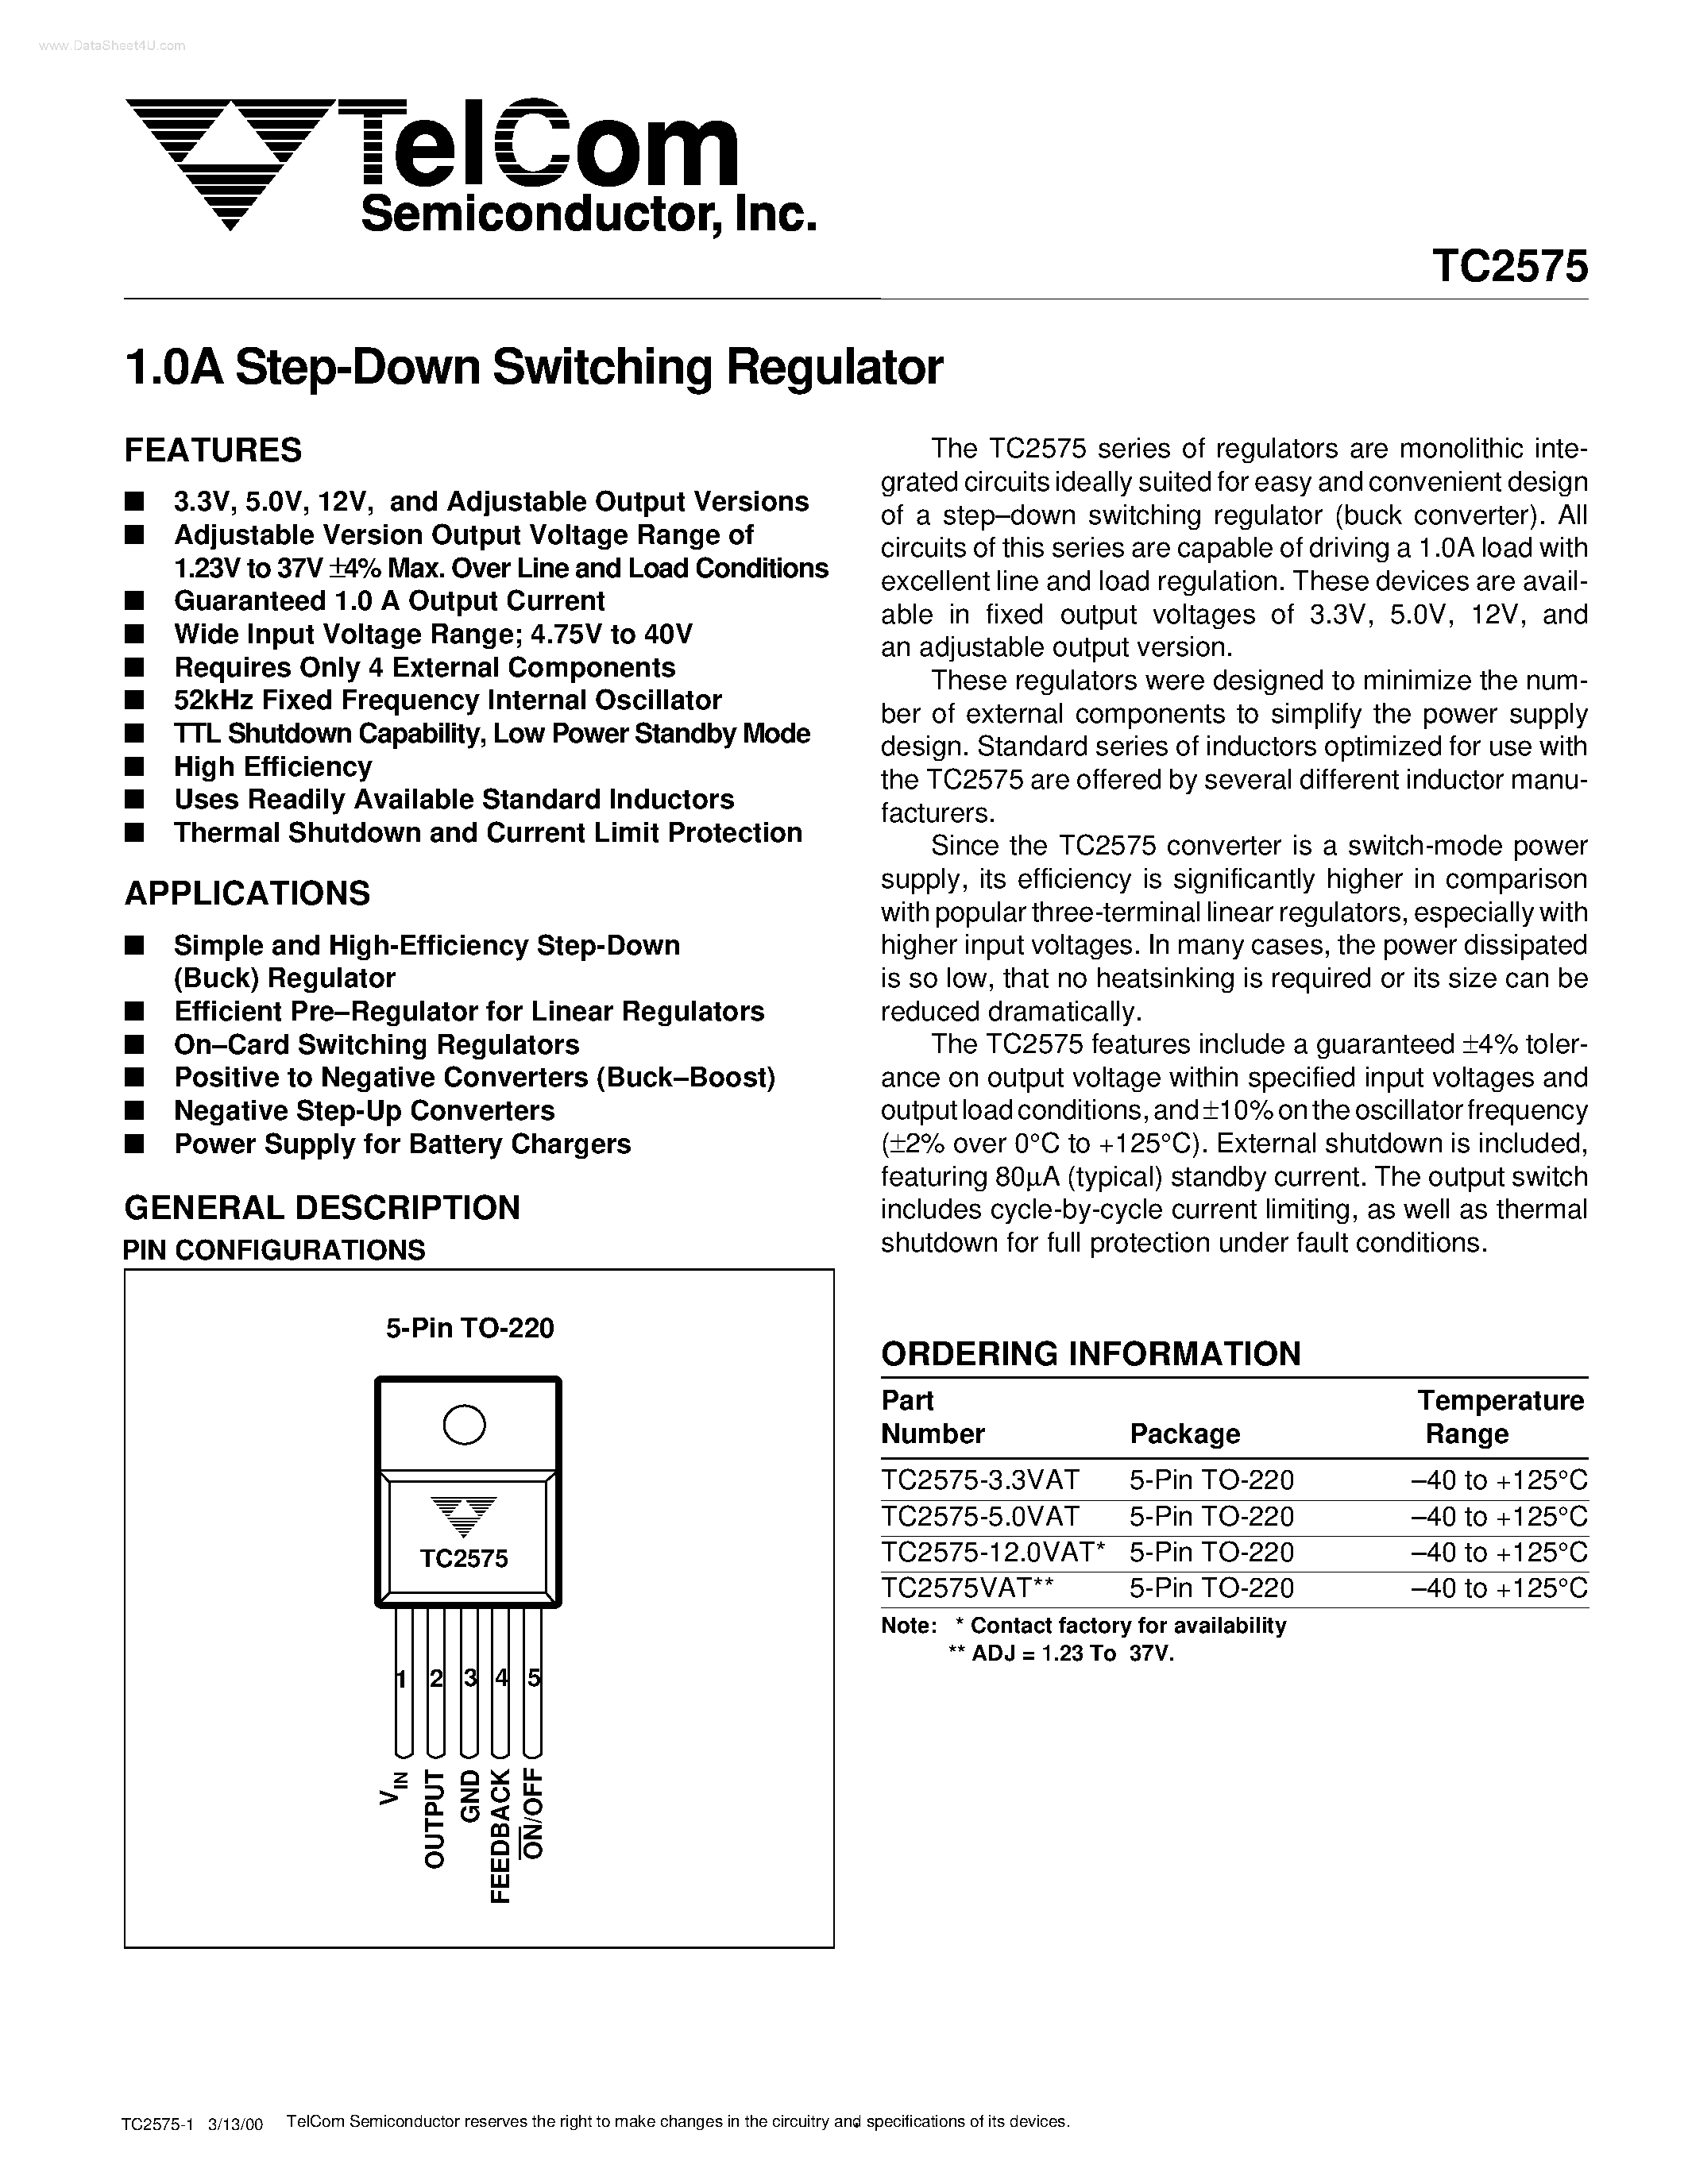 Даташит TC2575 - Step-Down Switching Regulator страница 1